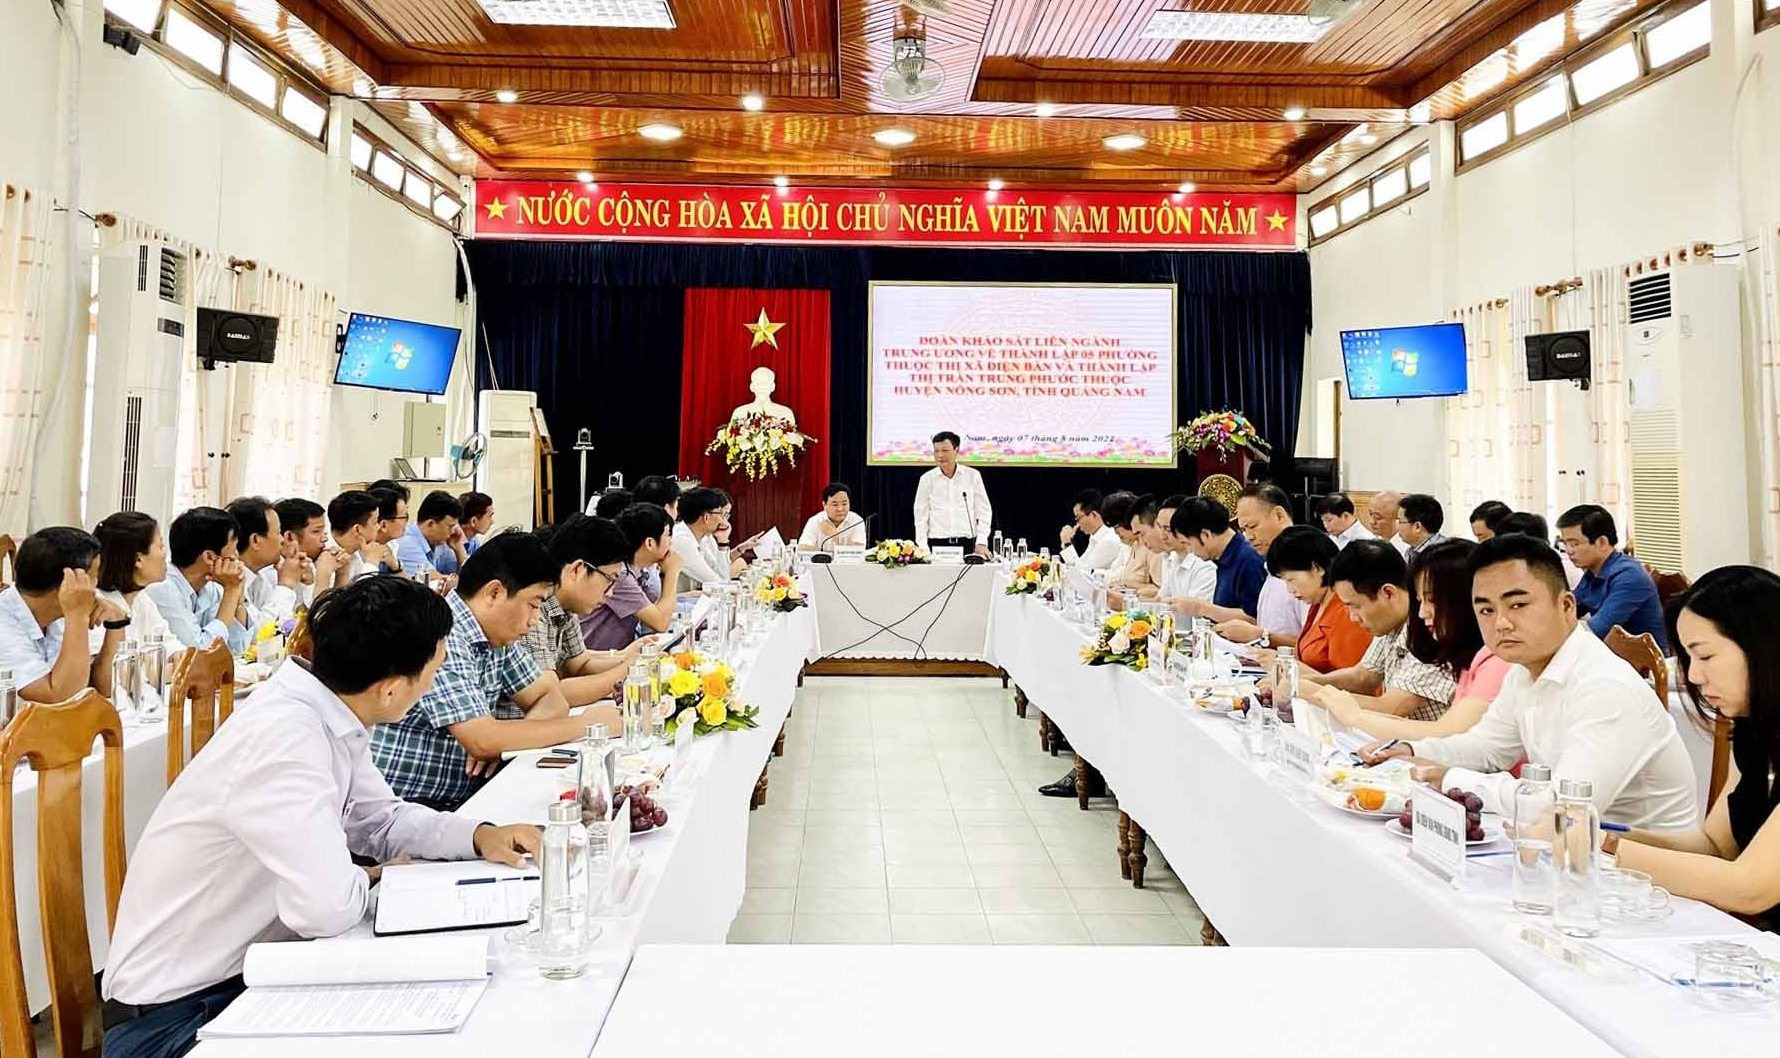 Thứ trưởng Bộ Nội vụ Nguyễn Duy Thăng - trưởng đoàn khảo sát liên ngành Trung ương phát biểu tại buổi làm việc. Ảnh TÂM LÊ